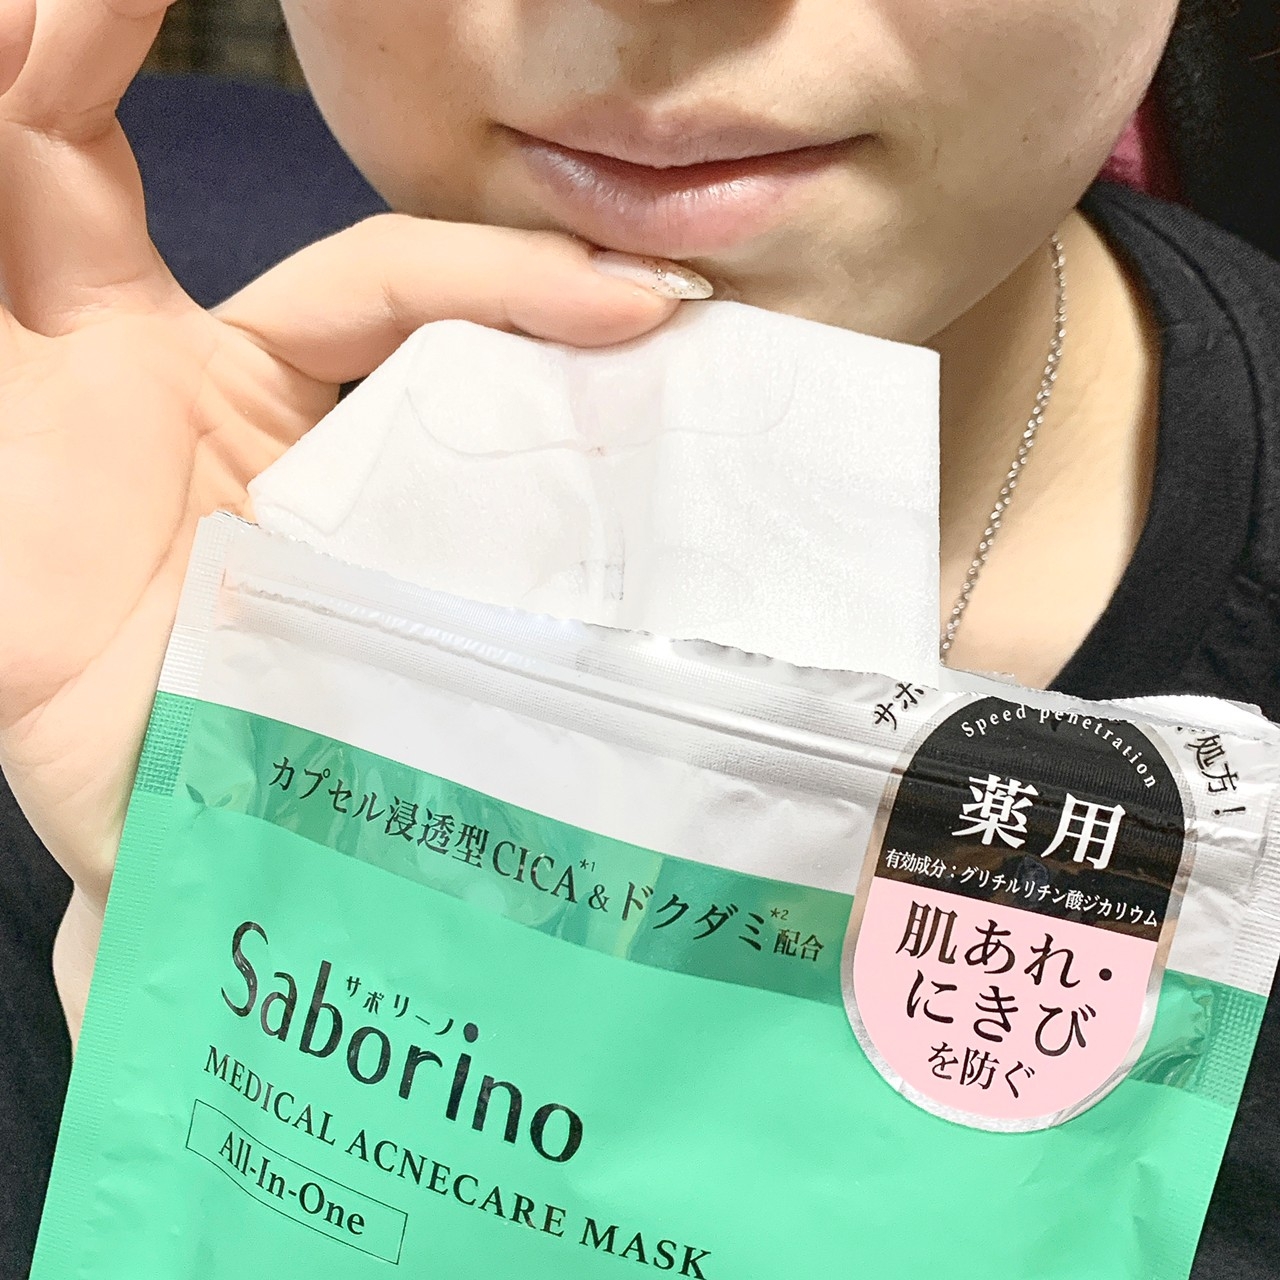 Saborino(サボリーノ) 薬用 ひたっとマスク ACの良い点・メリットに関するkana_cafe_timeさんの口コミ画像2